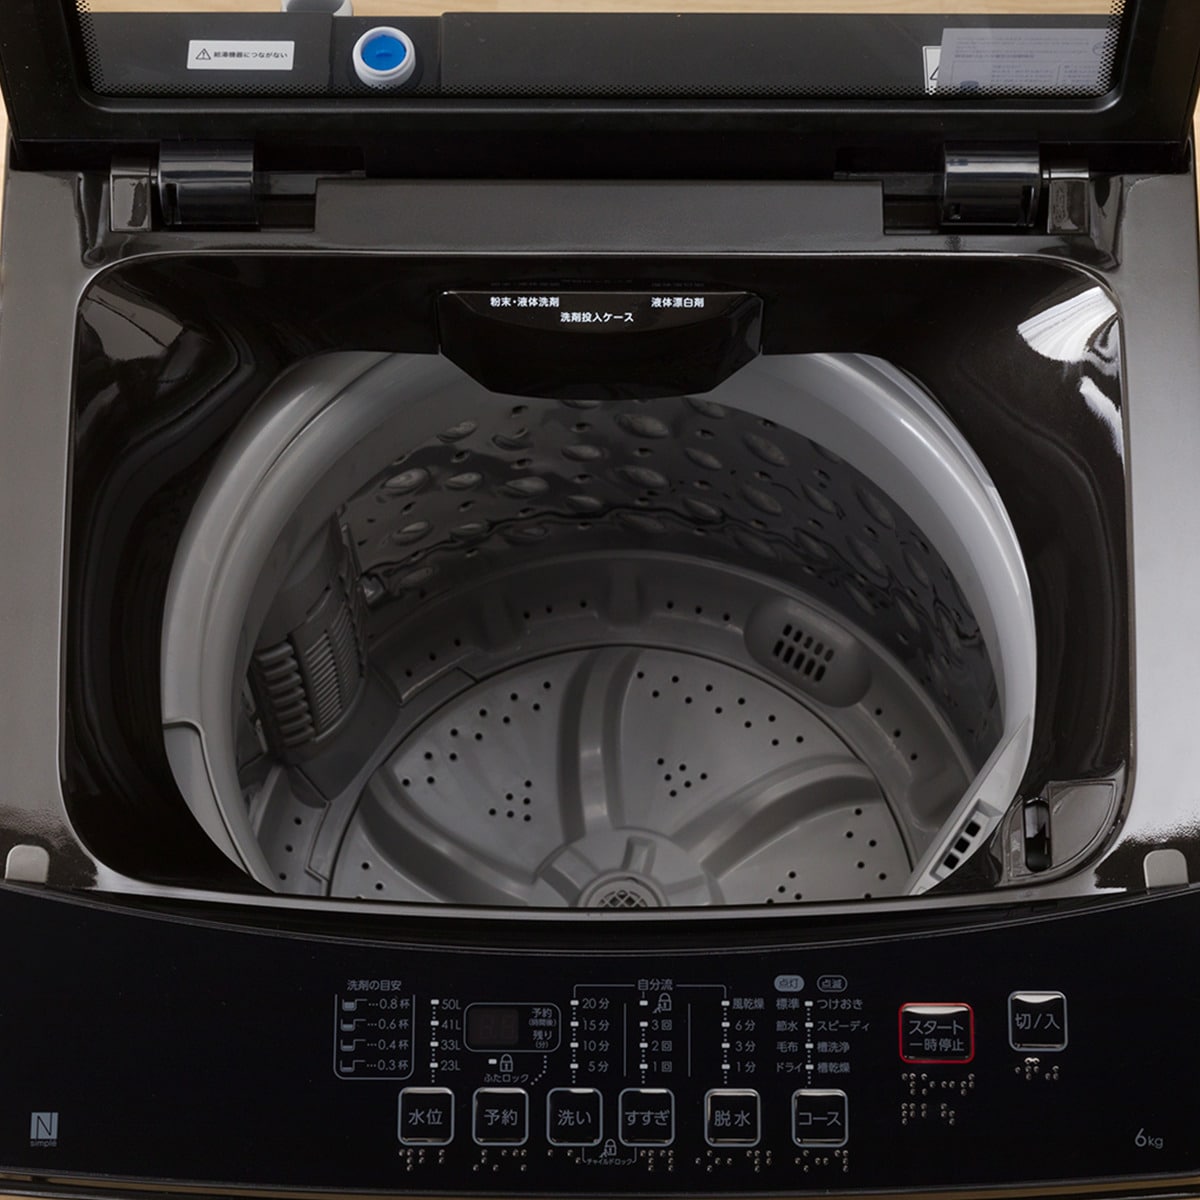 ブラック) 6kg全自動洗濯機(NTR60 - 2